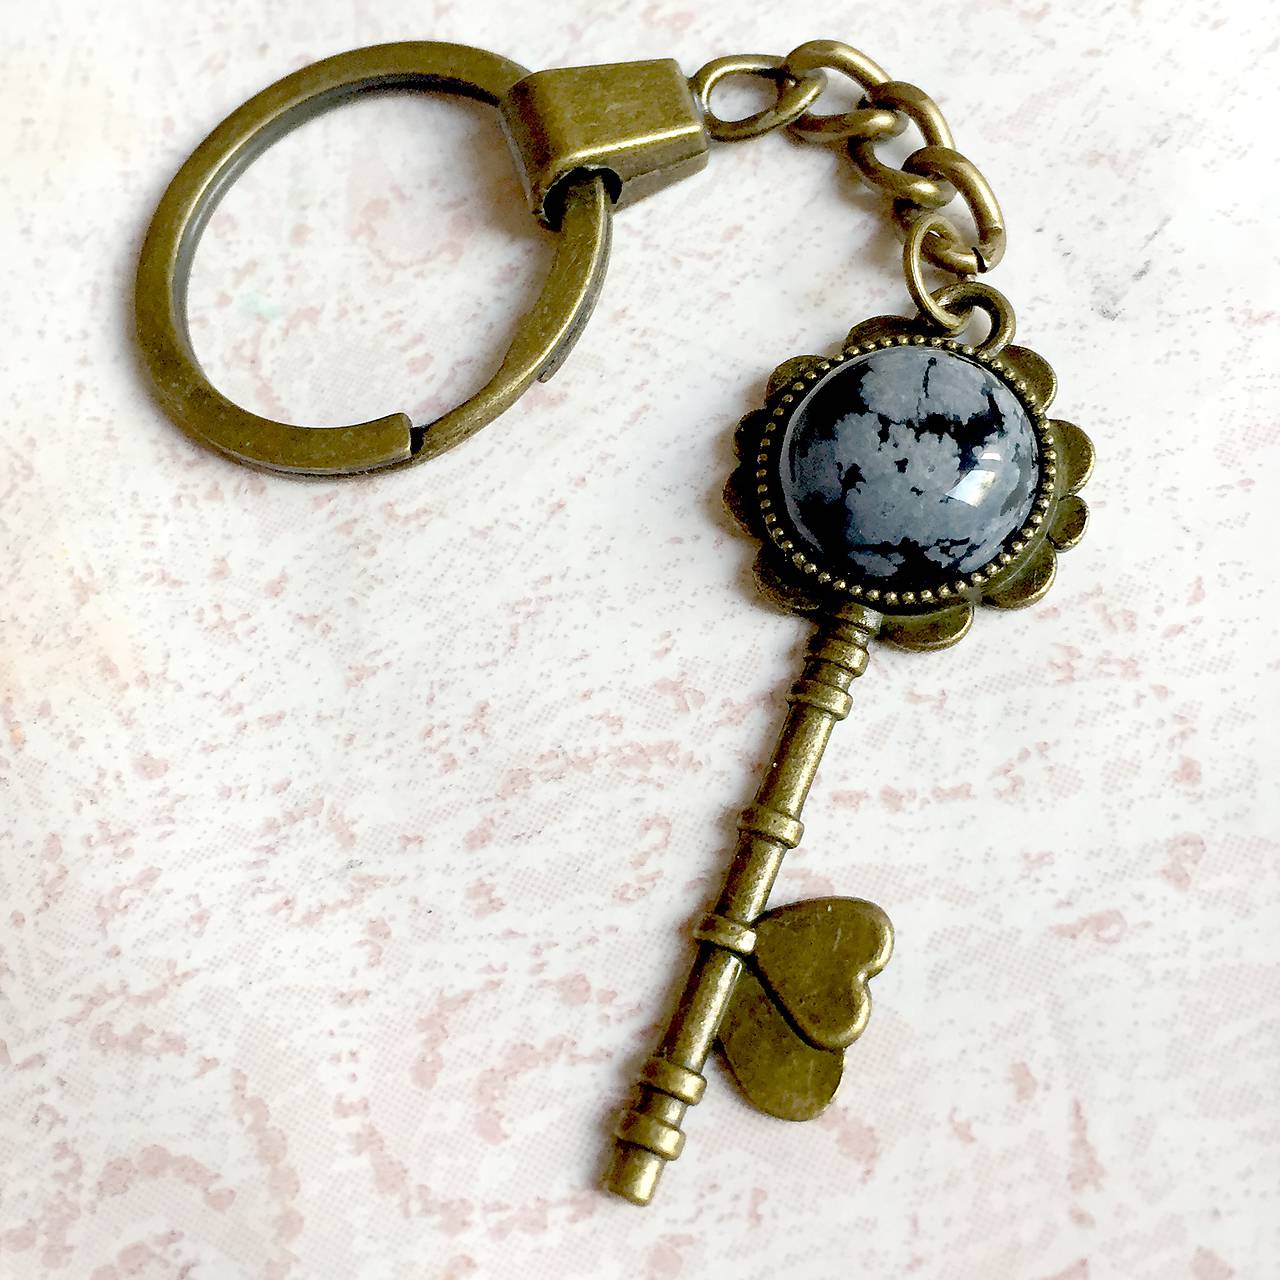 Snowflake Obsidian Flower Key Keychain / Kľúčenka s vločkovým obsidiánom - kľúč s kvetom